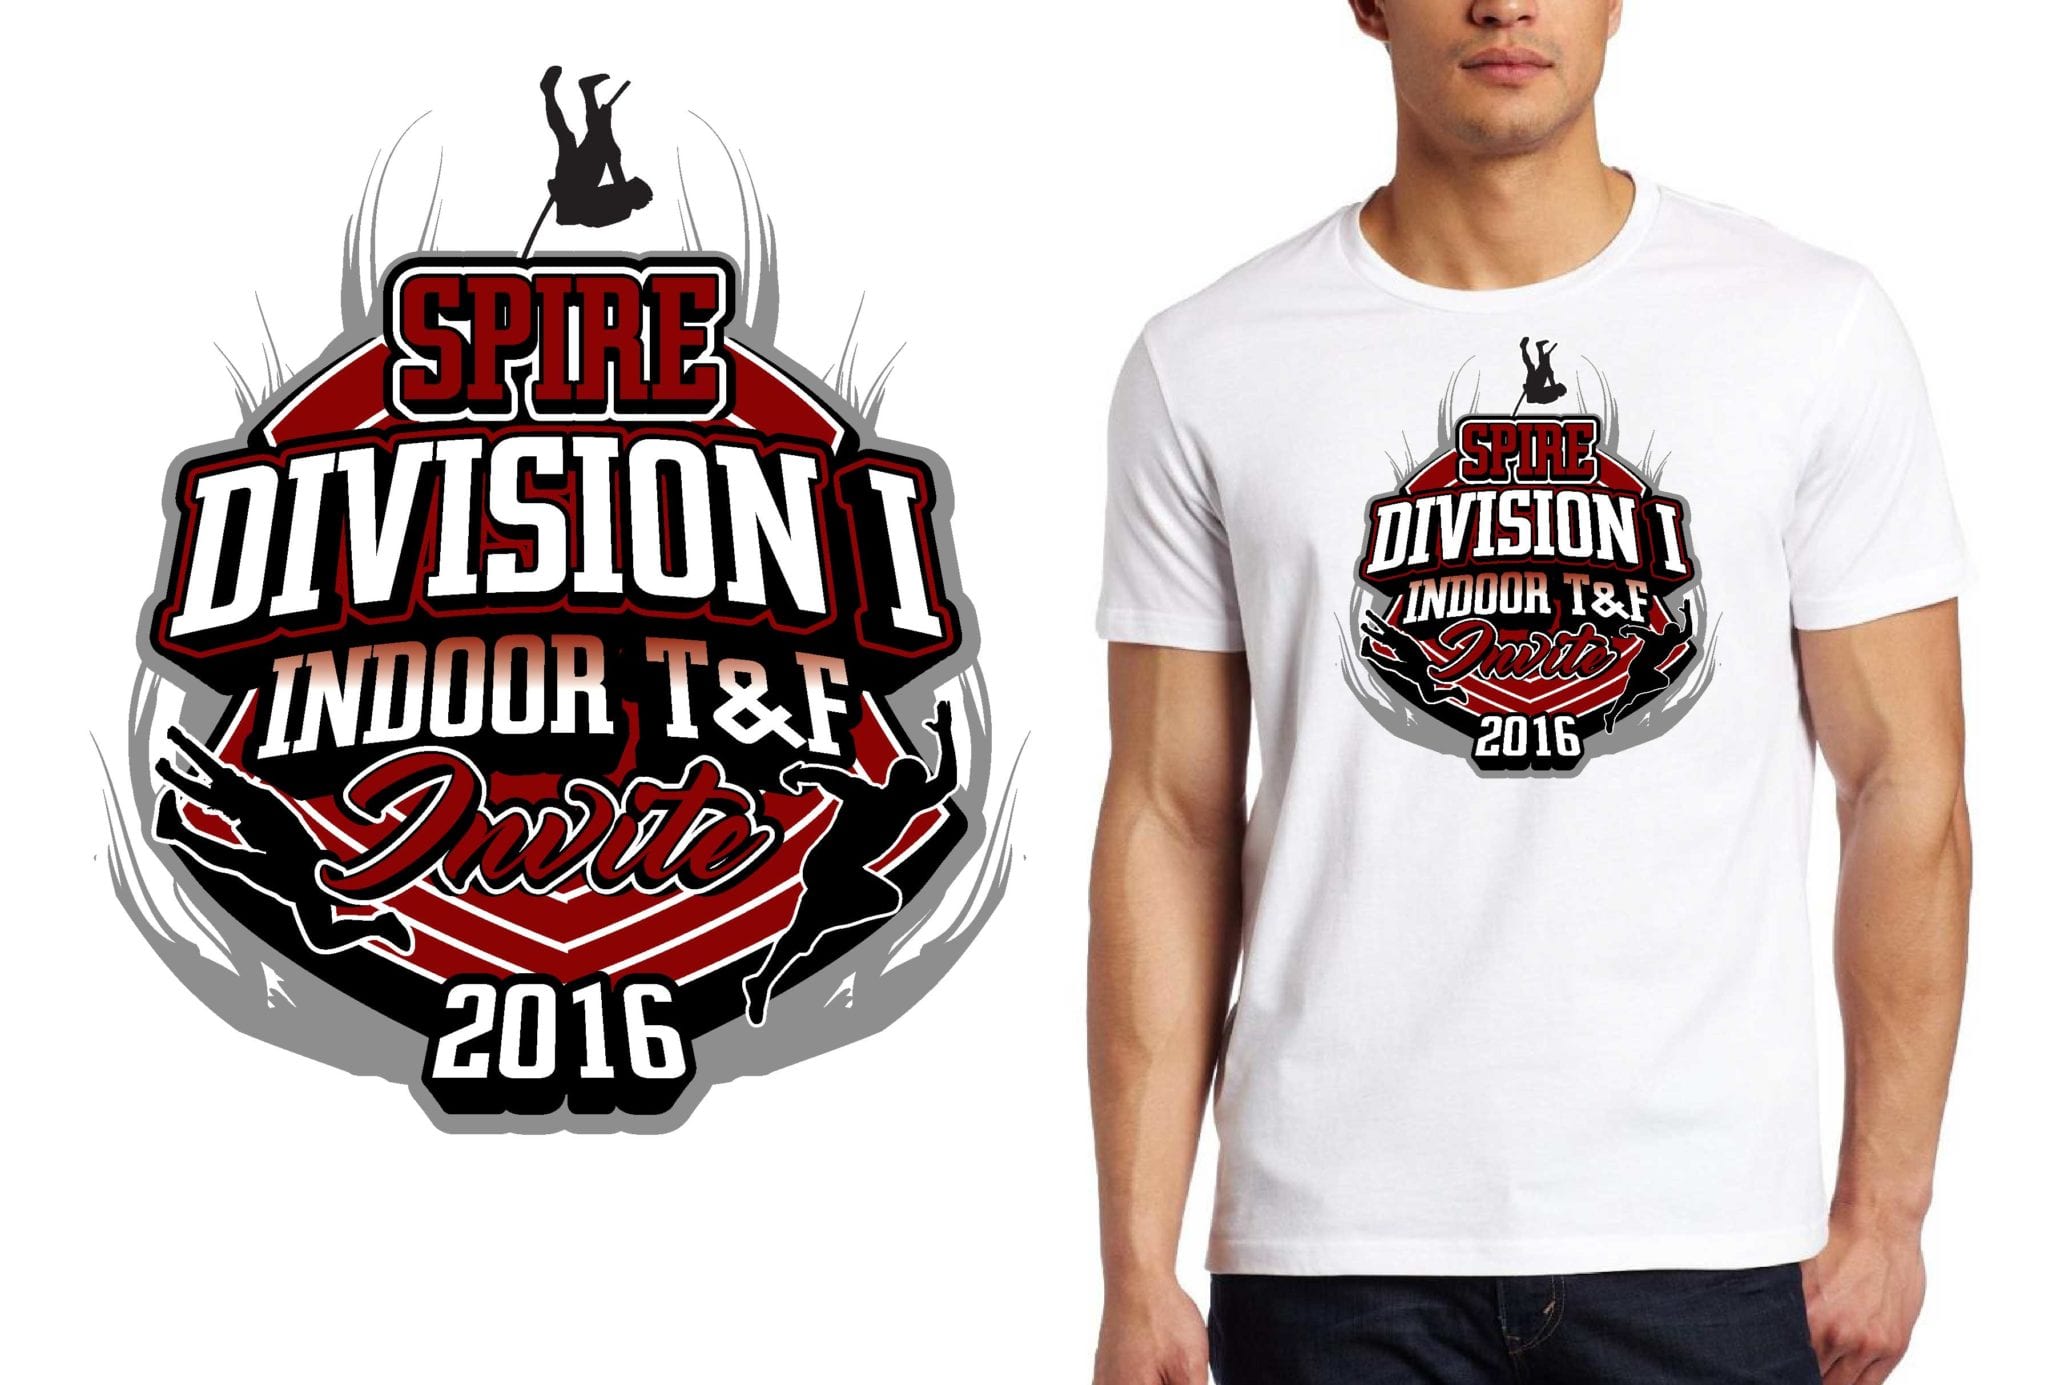 SPIRE Division I Indoor TF Invite logo design - UrArtStudio